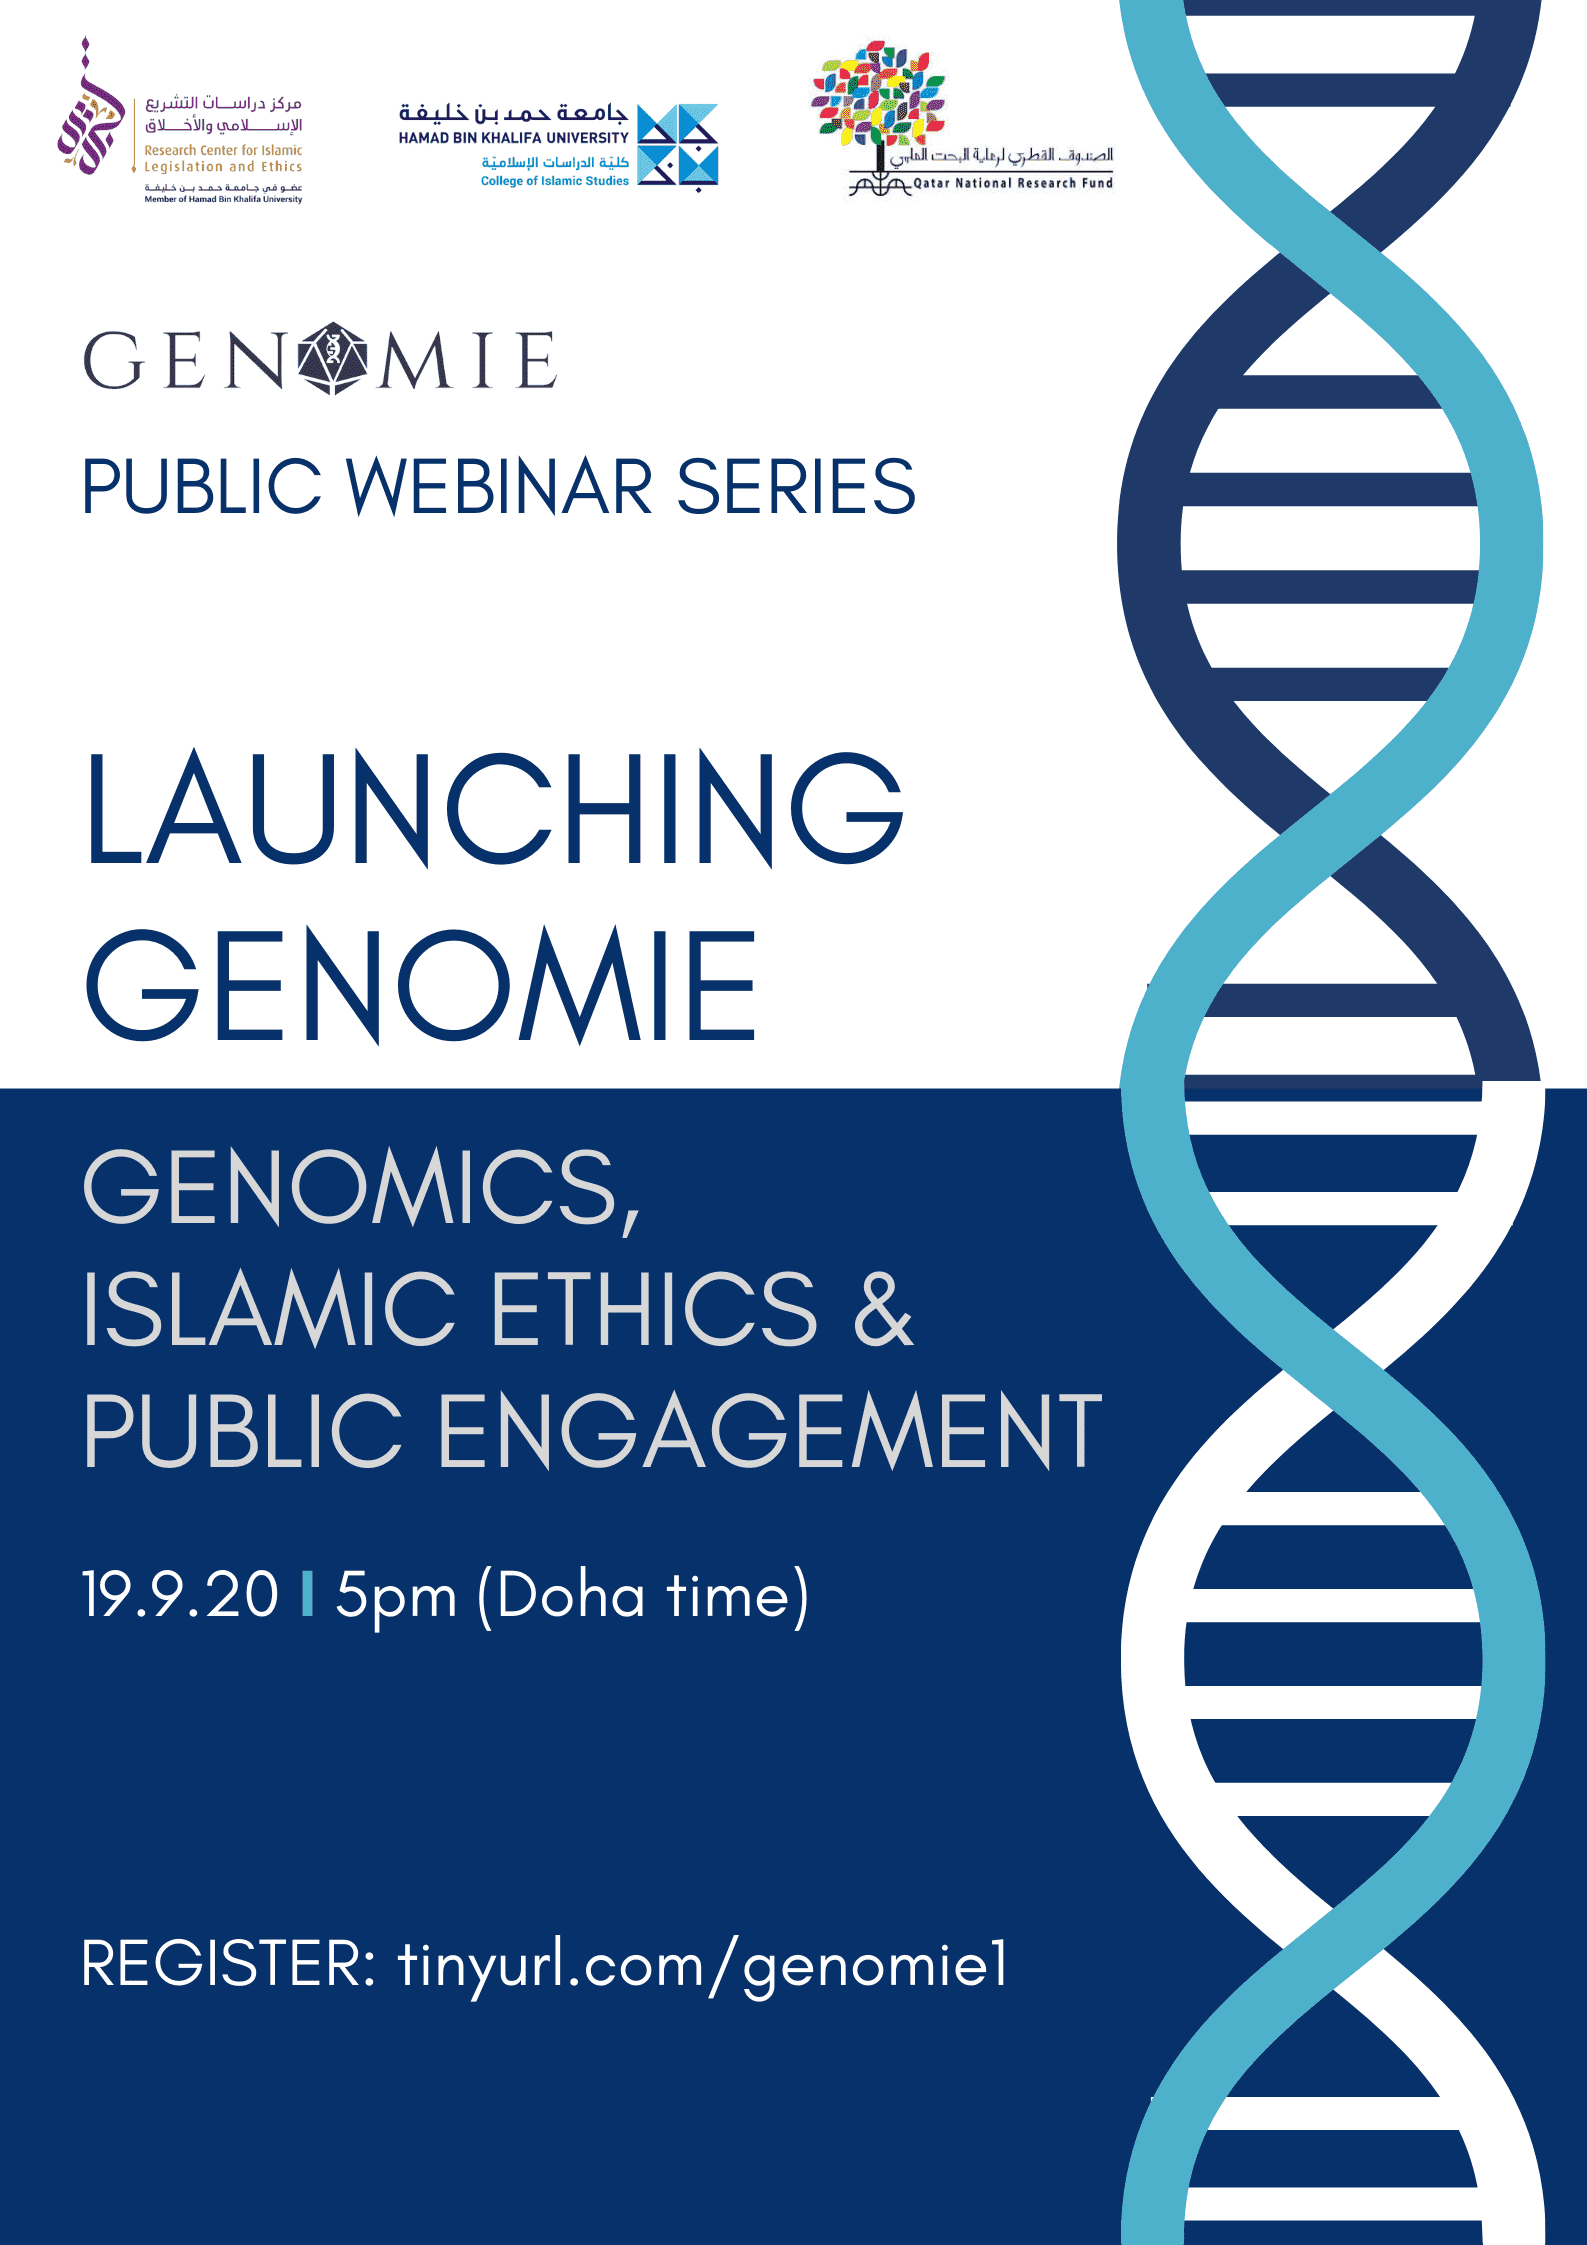 Genomie's inaugural webinar